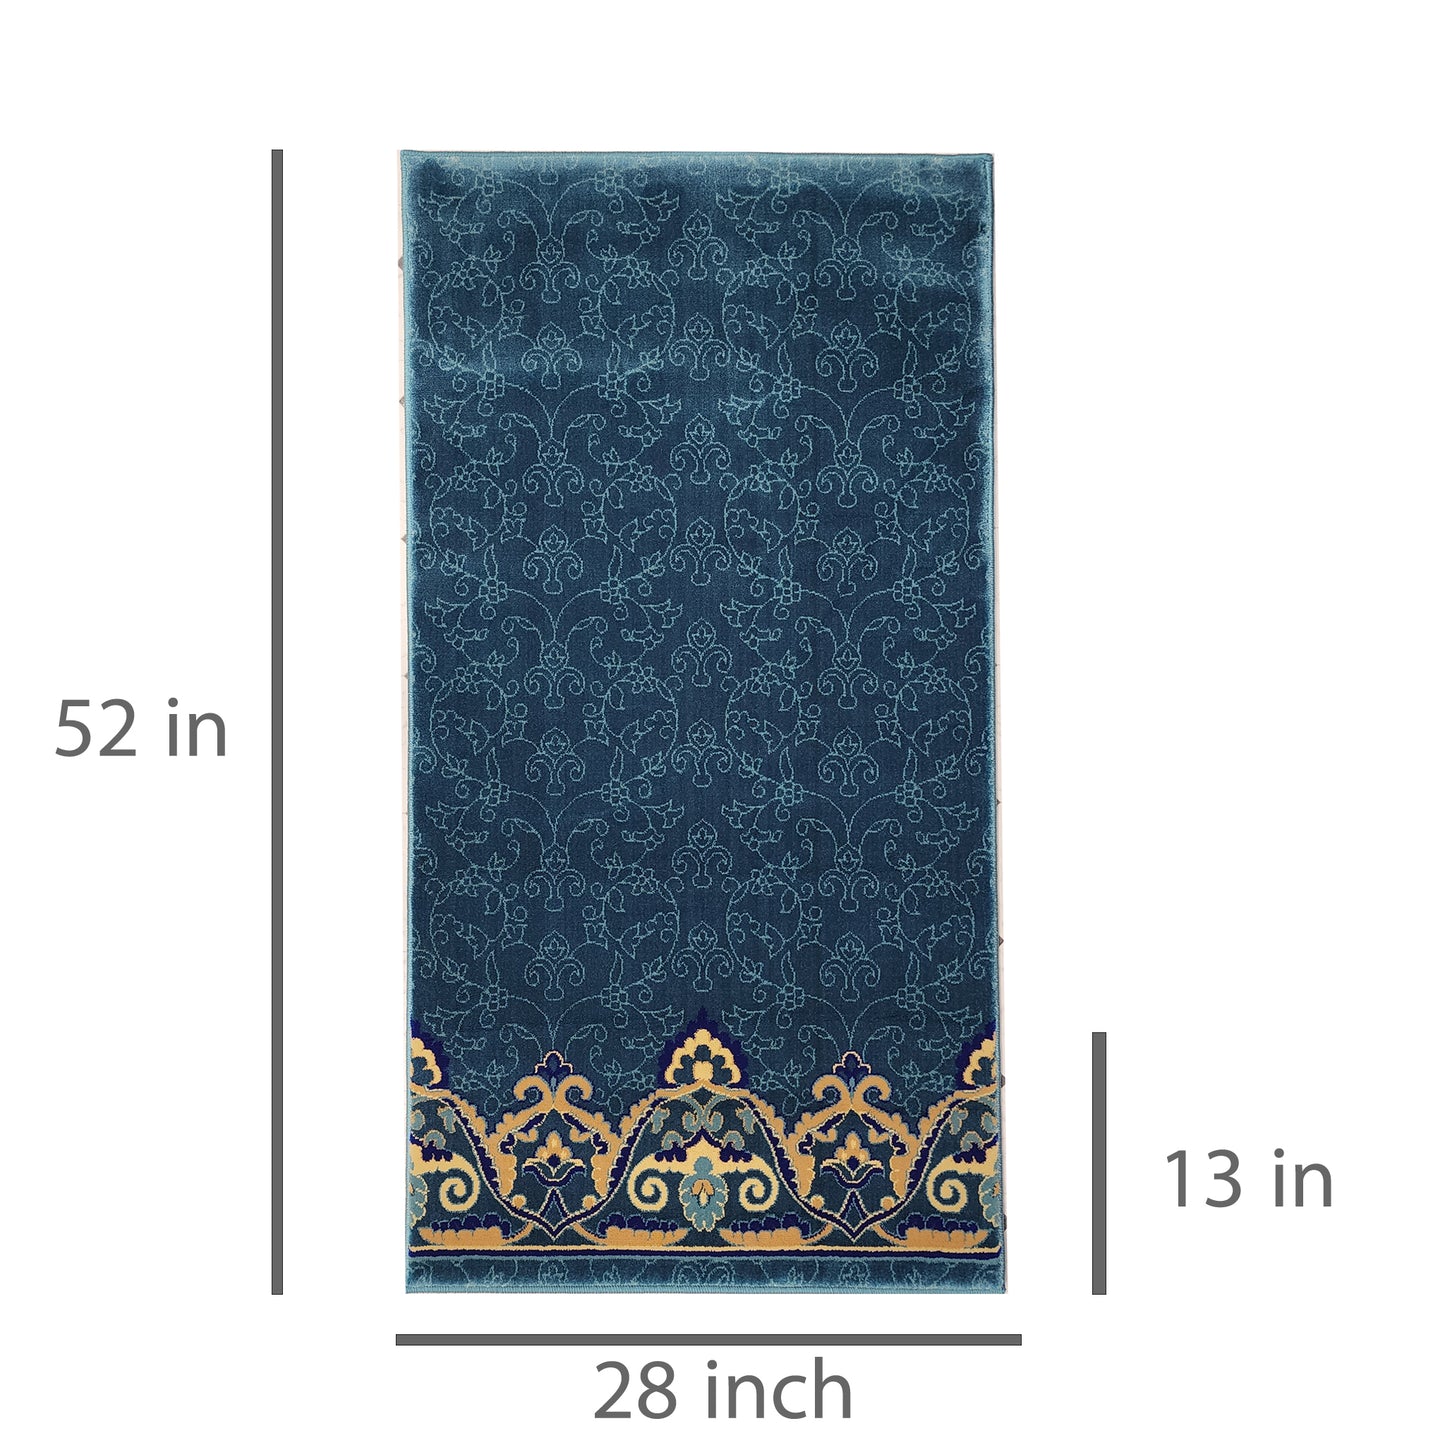 OMAR Light Blue Single Prayer Carpet Mat